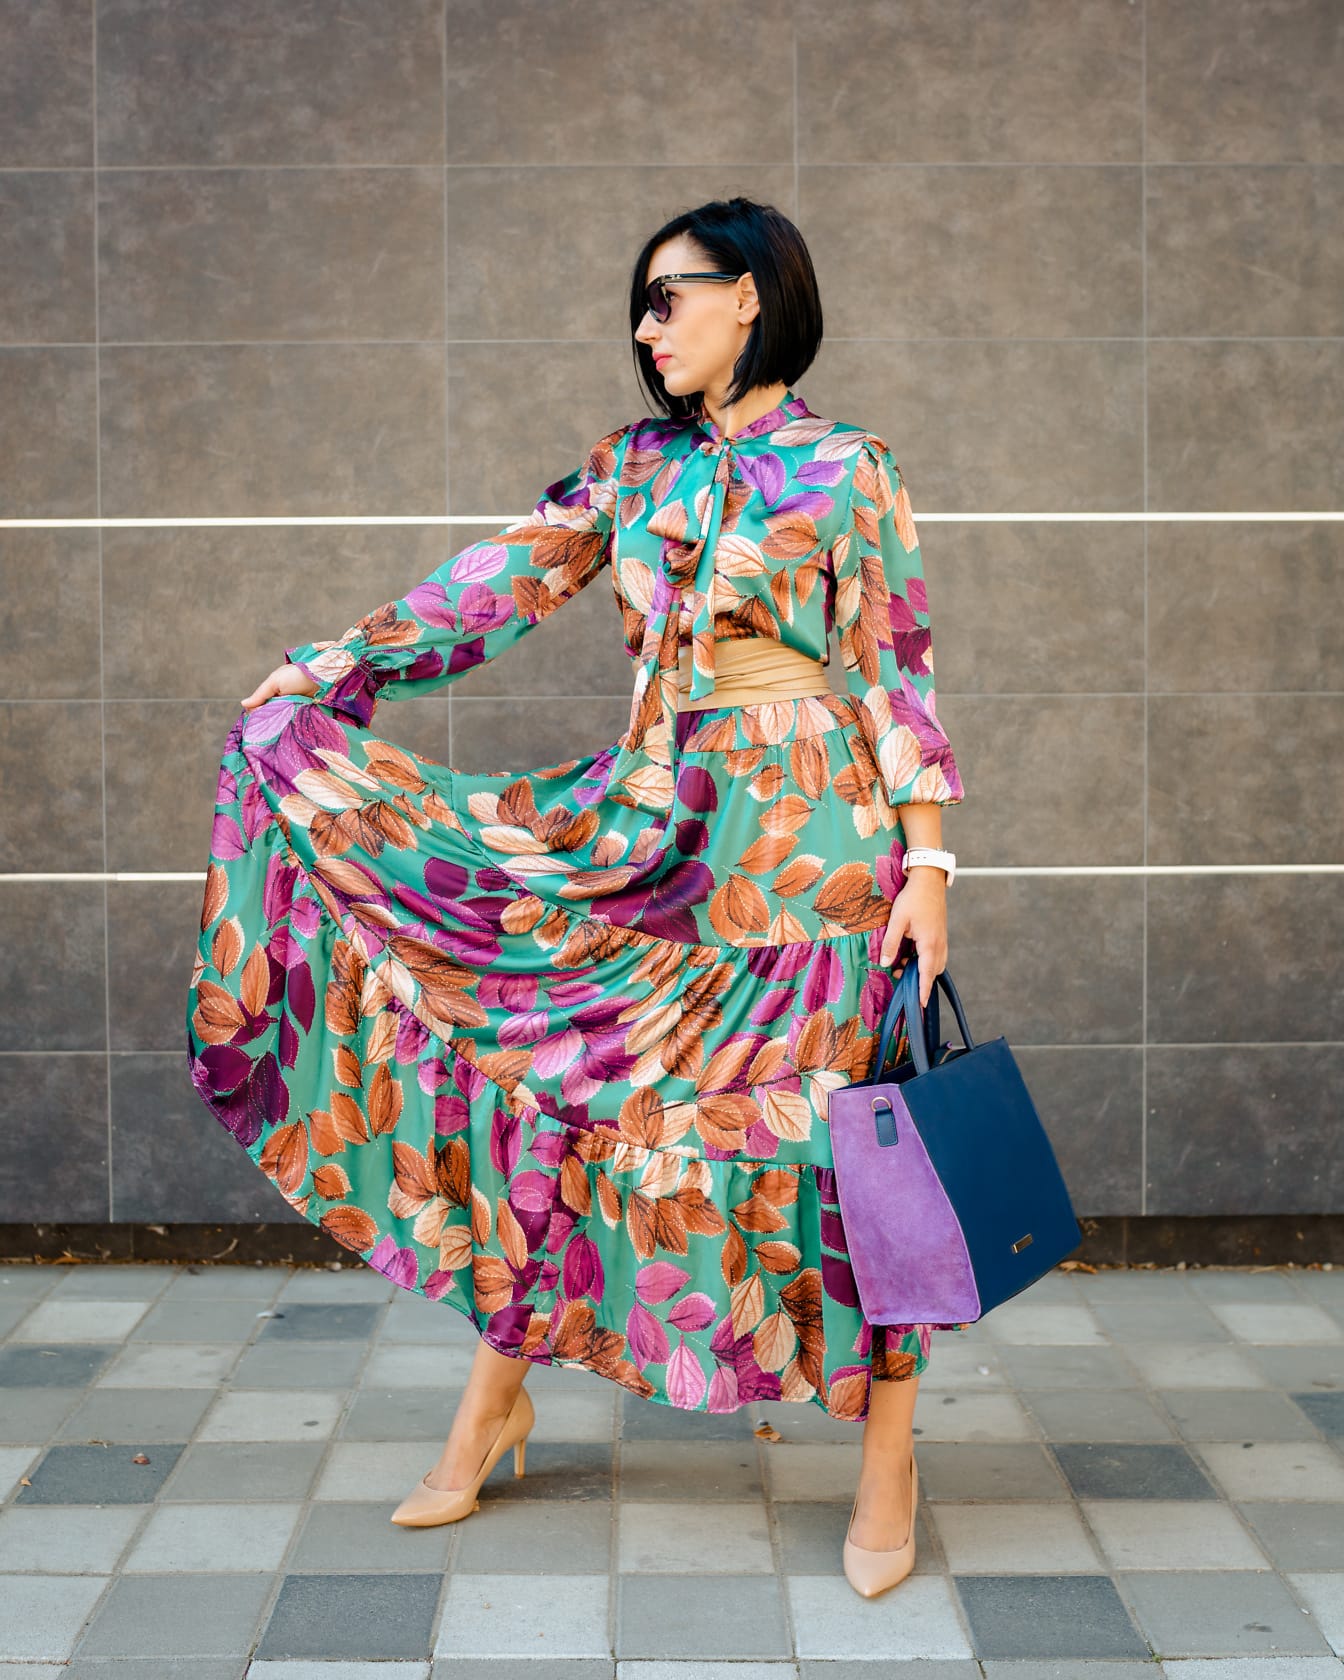 Štíhla mladá dáma pózuje vo farebných šatách a fialovej módnej kabelke